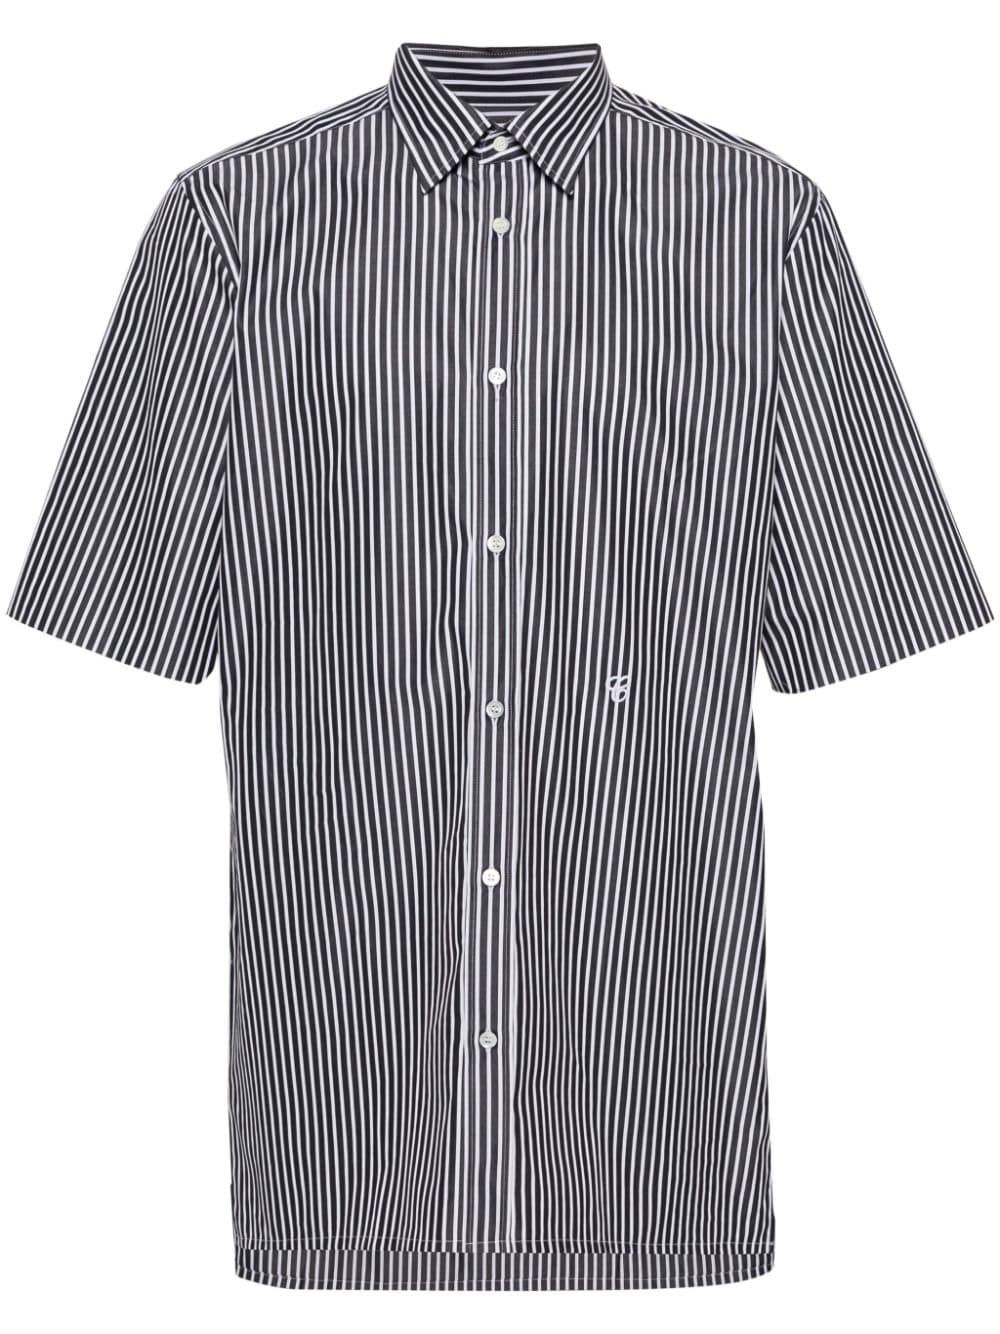 Image 1 of Maison Margiela embroidered-logo striped shirt